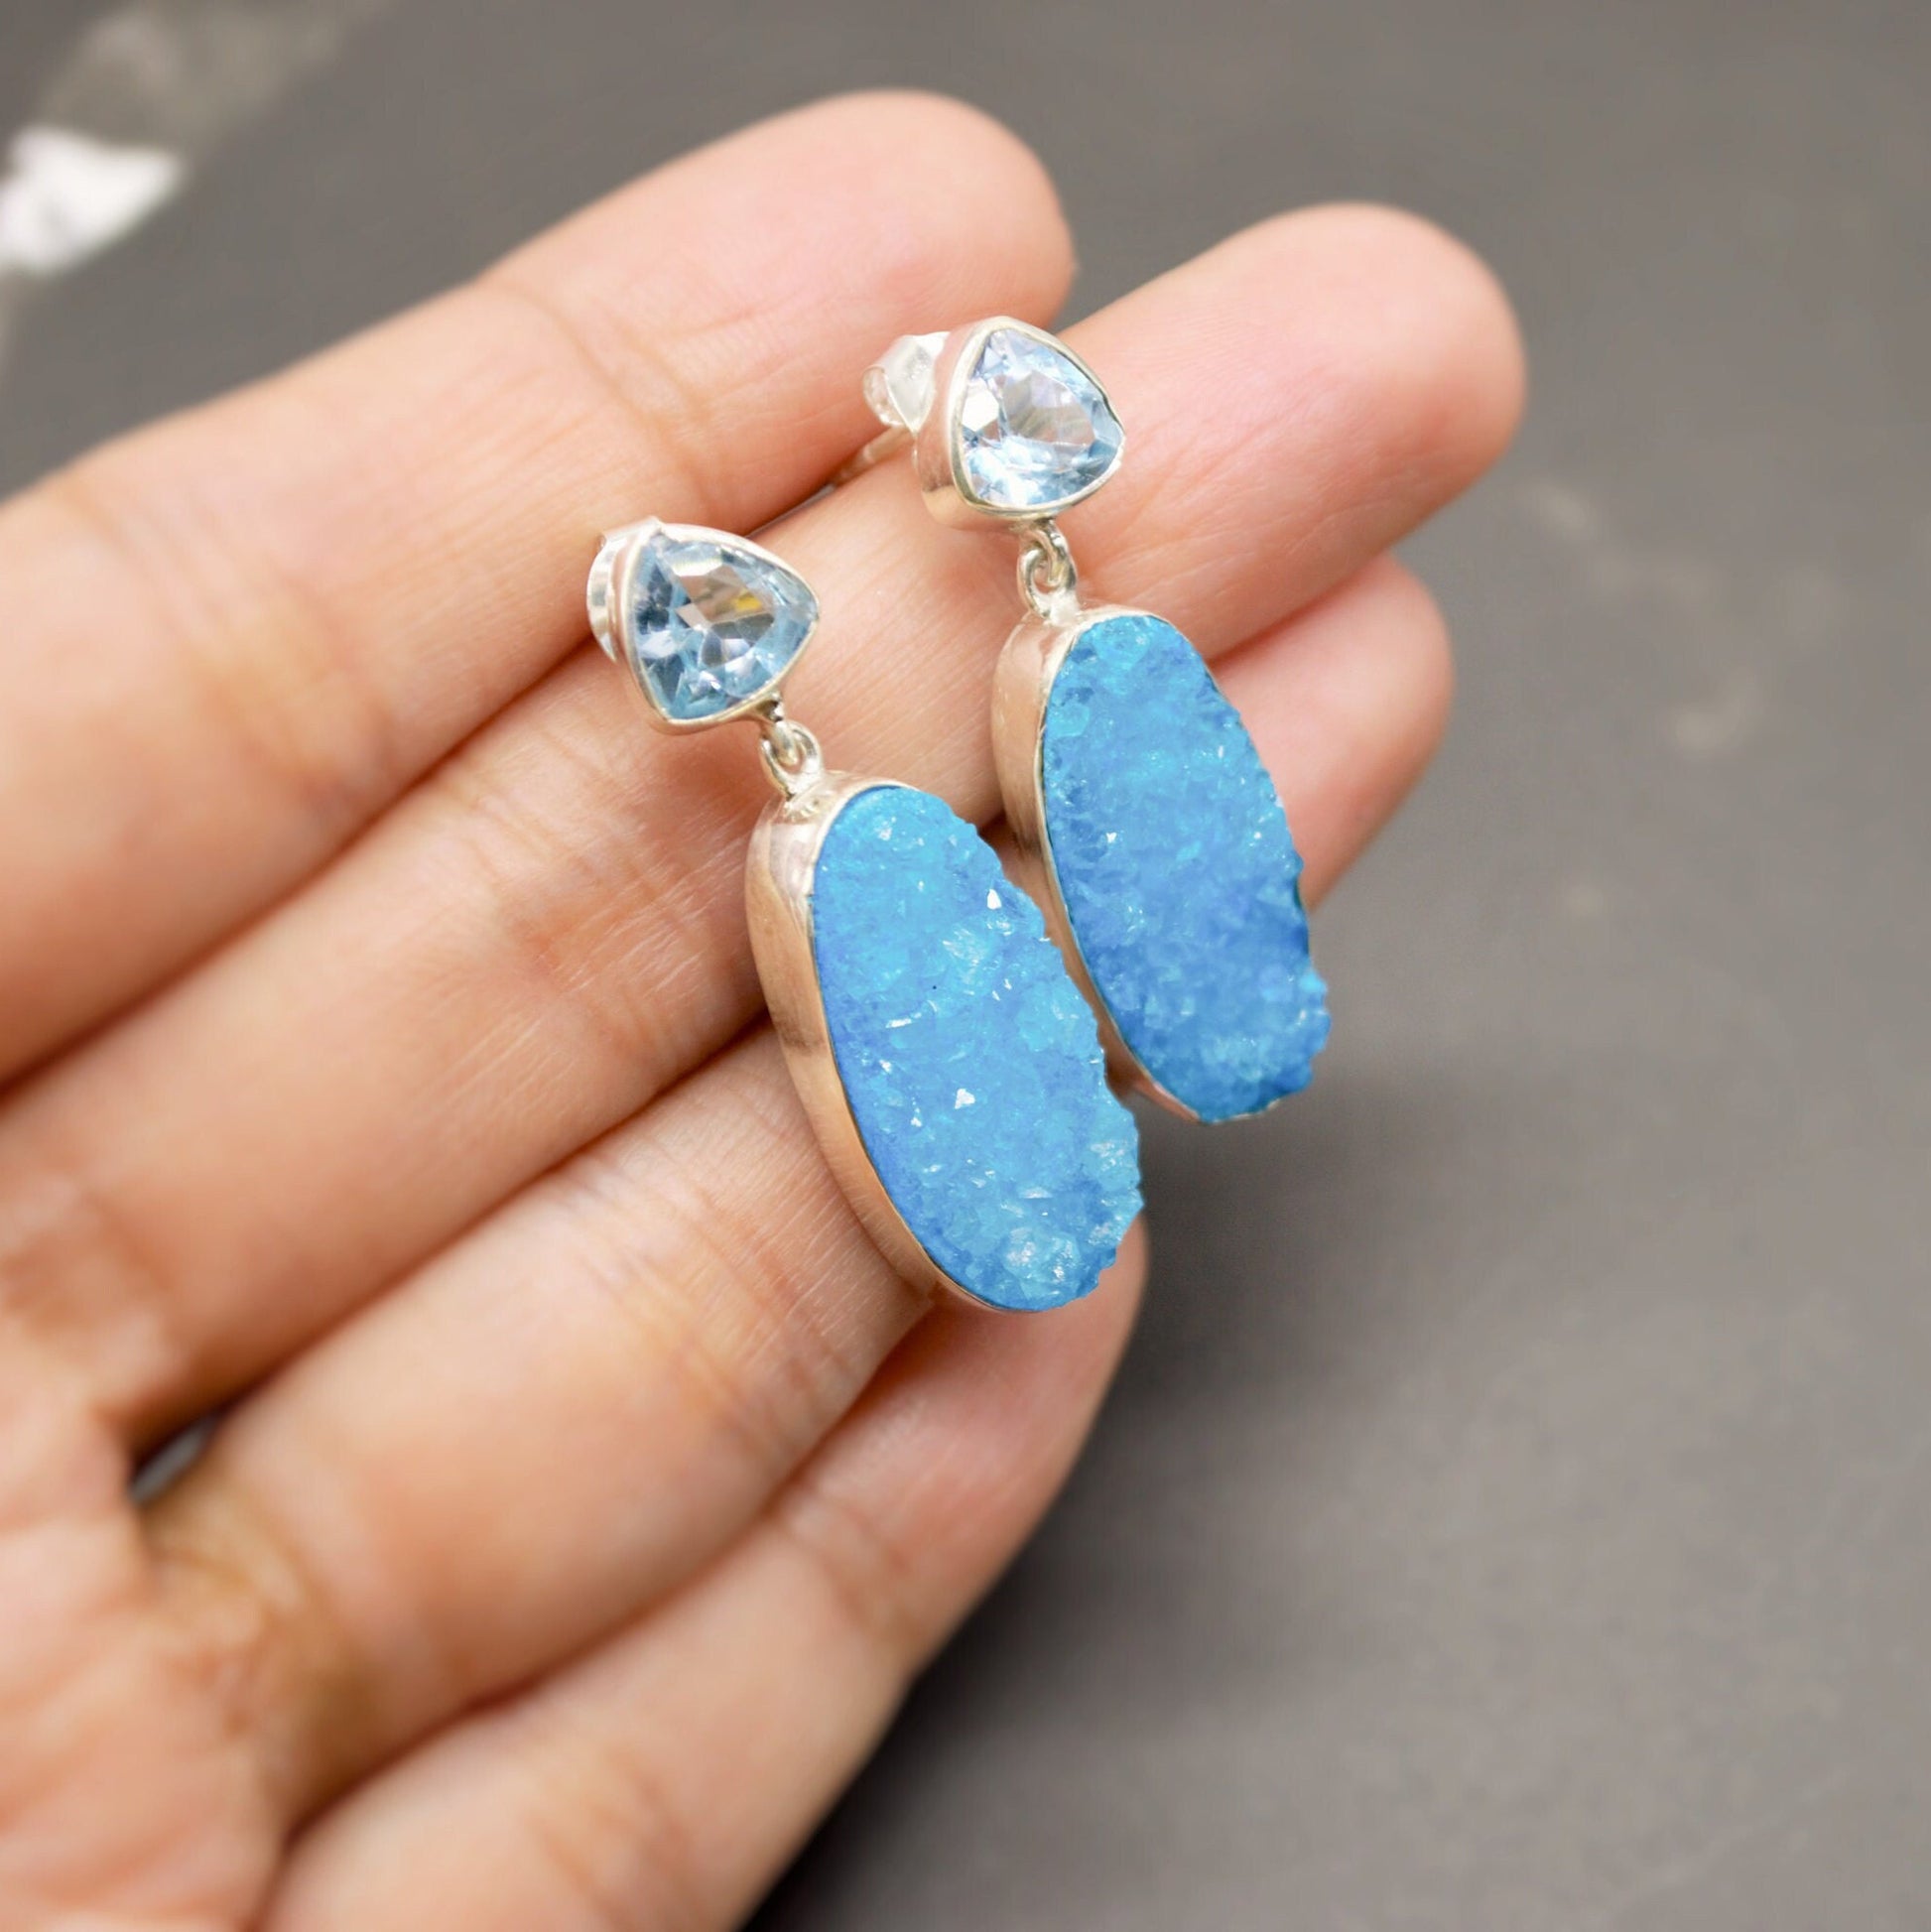 Blue Topaz, Druzy Agate Silver Dangle Earrings, Dainty Gemstone Drop Earrings, Unique Earrings, December Birthstone